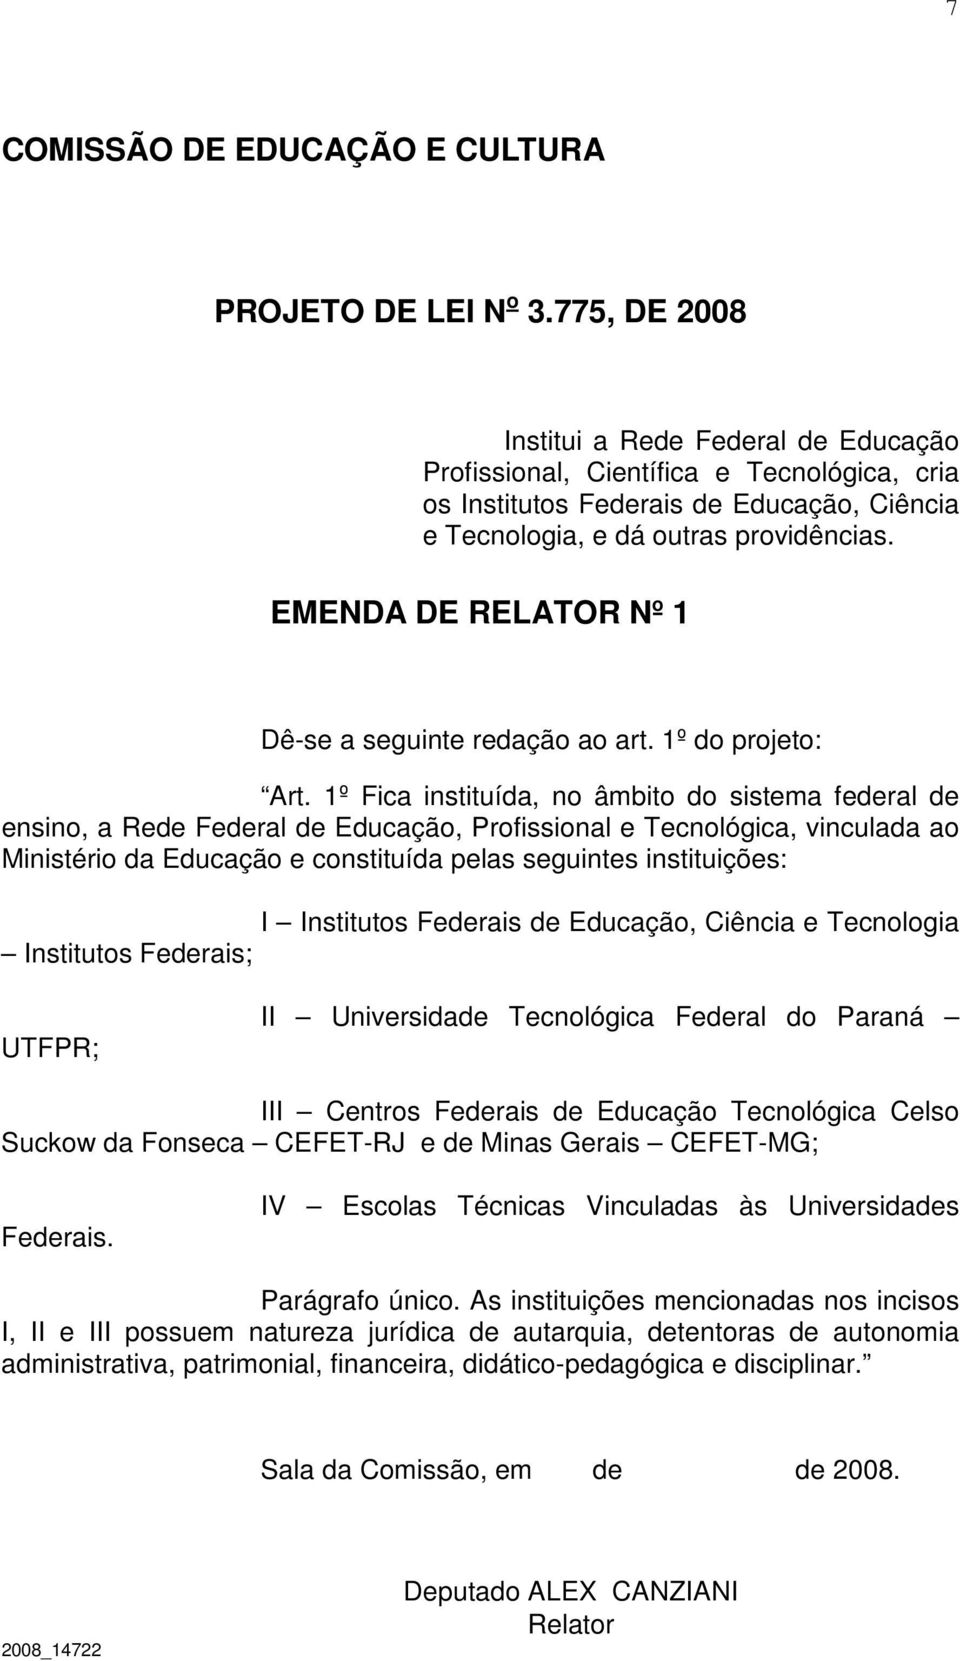 instituições: I Institutos Federais de Educação, Ciência e Tecnologia Institutos Federais; UTFPR; II Universidade Tecnológica Federal do Paraná III Centros Federais de Educação Tecnológica